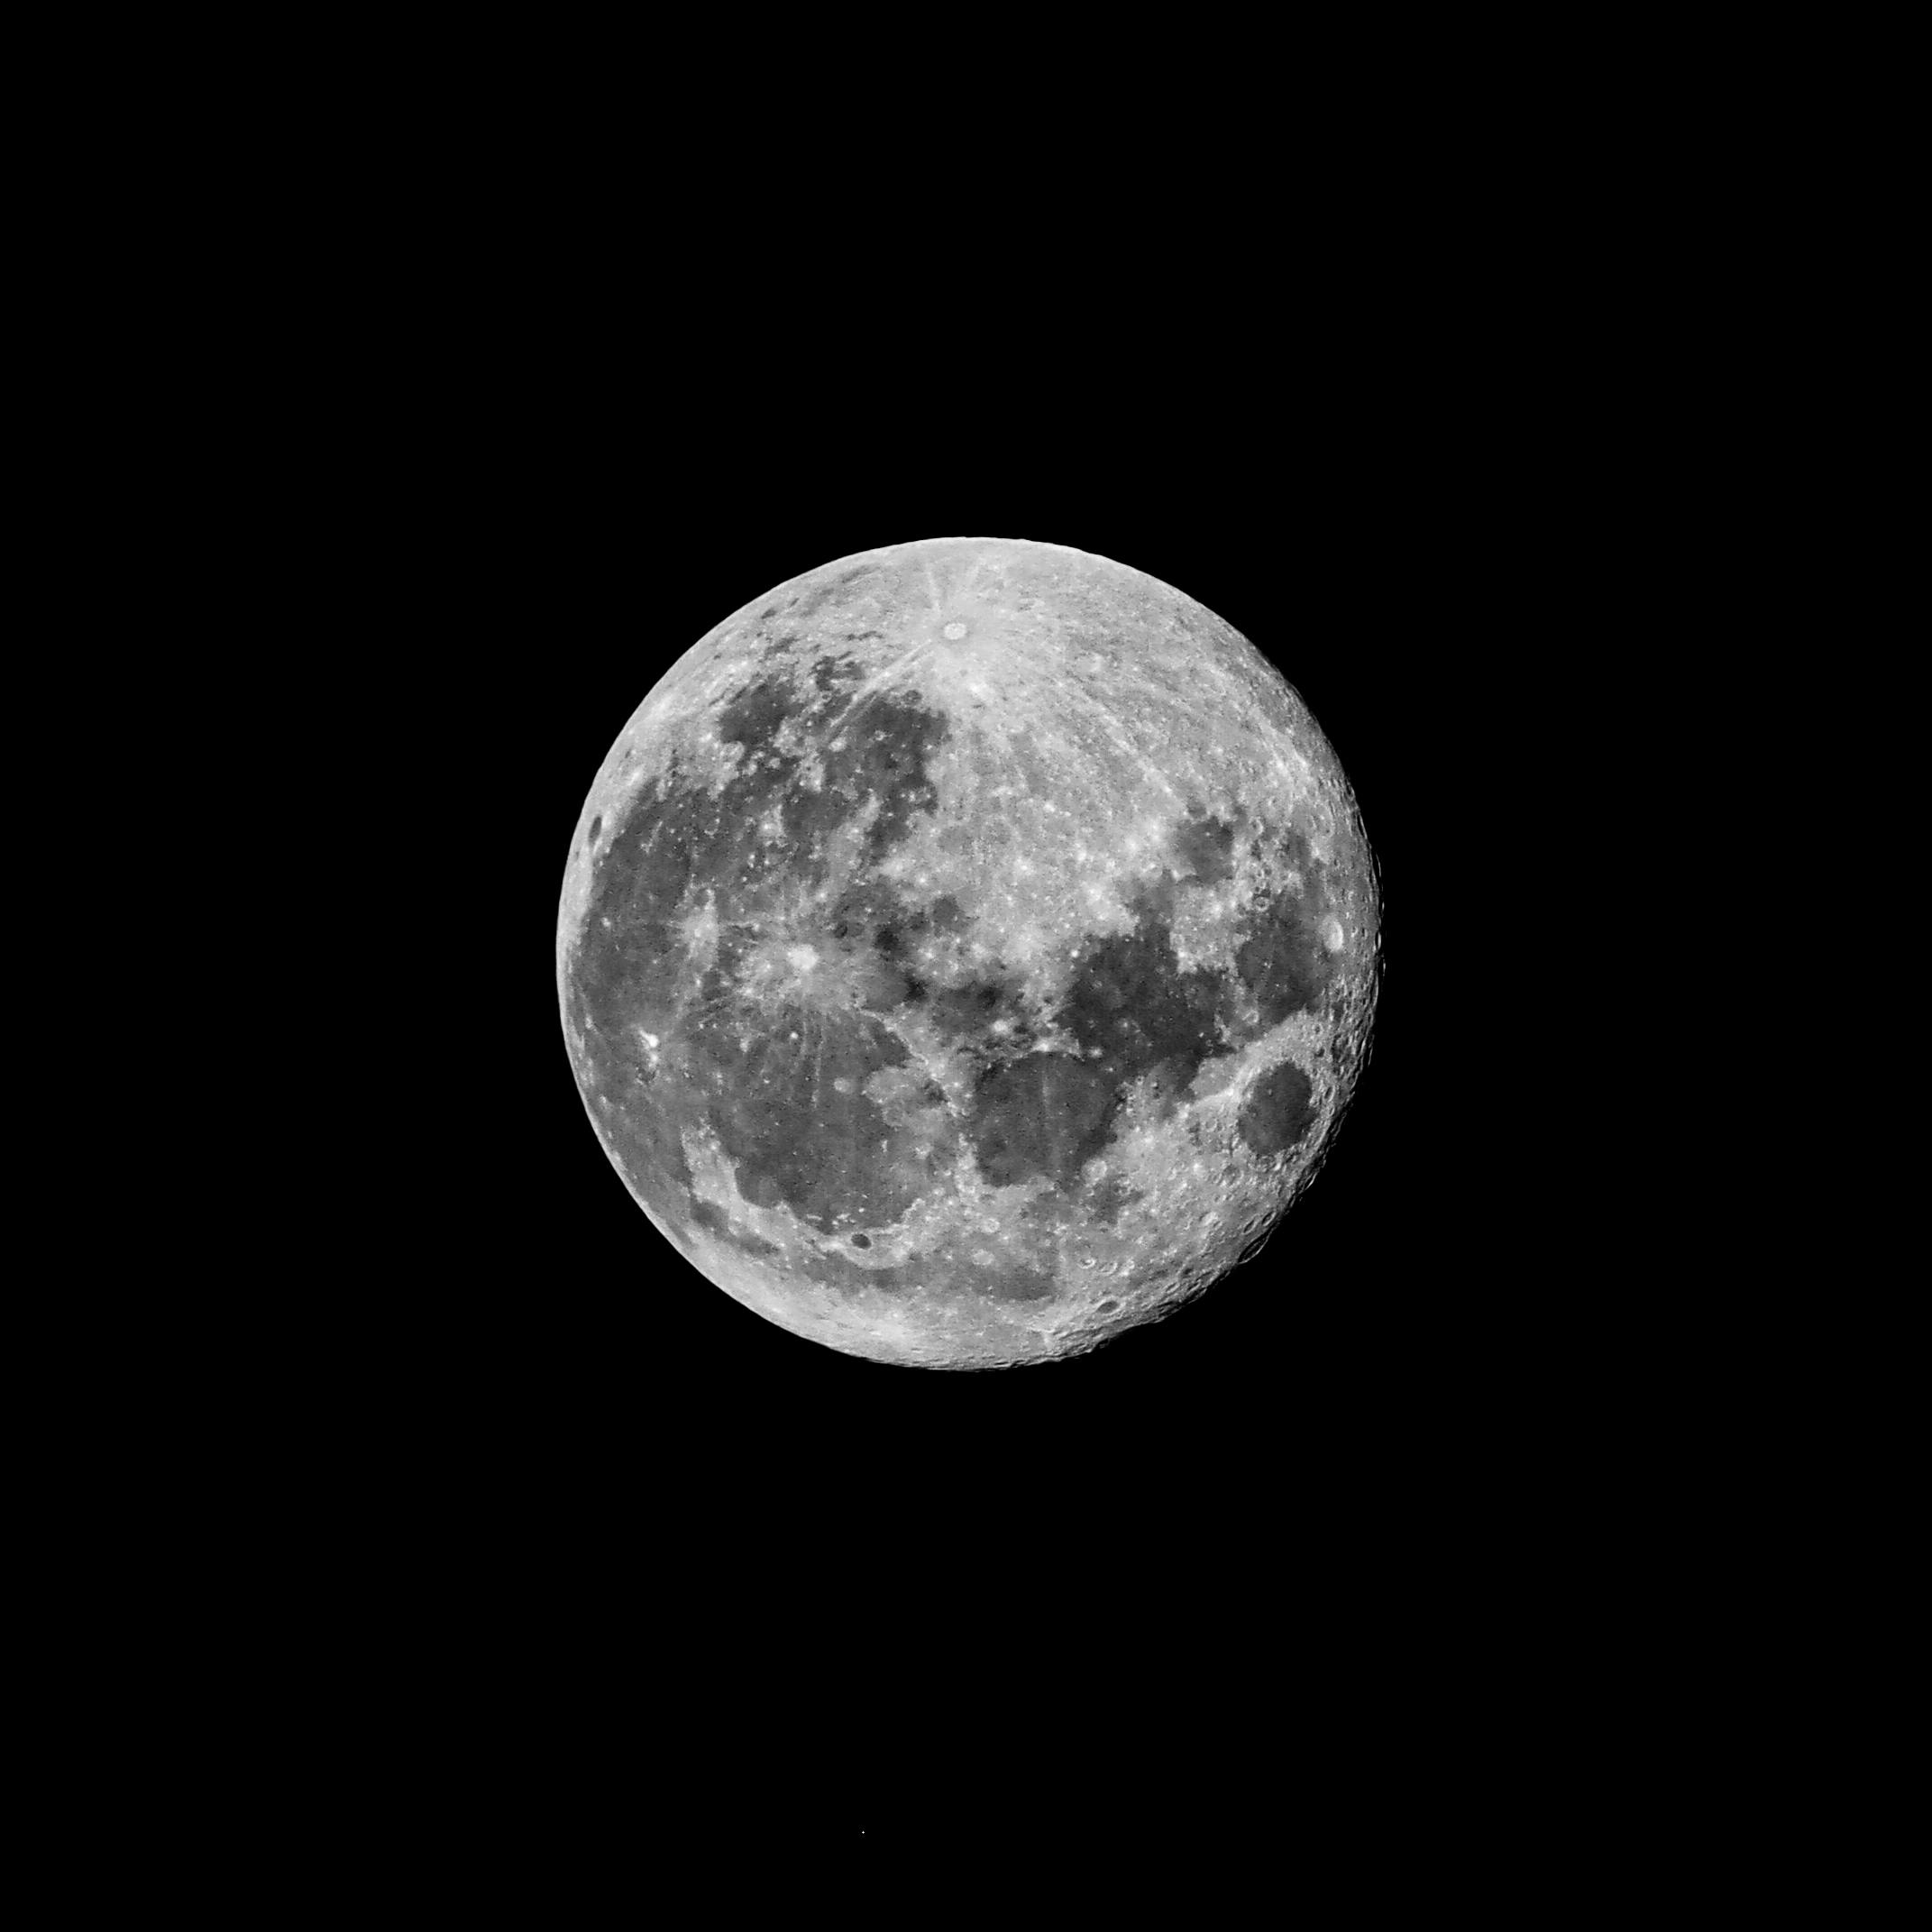 Đêm trăng tròn là lúc mọi thứ trở nên tràn đầy sắc màu và sự kỳ diệu. Hãy cùng chiêm ngưỡng bức ảnh với nền đen đầy ấn tượng này để tận hưởng cảm giác thật hoàn hảo của đêm trăng tròn.